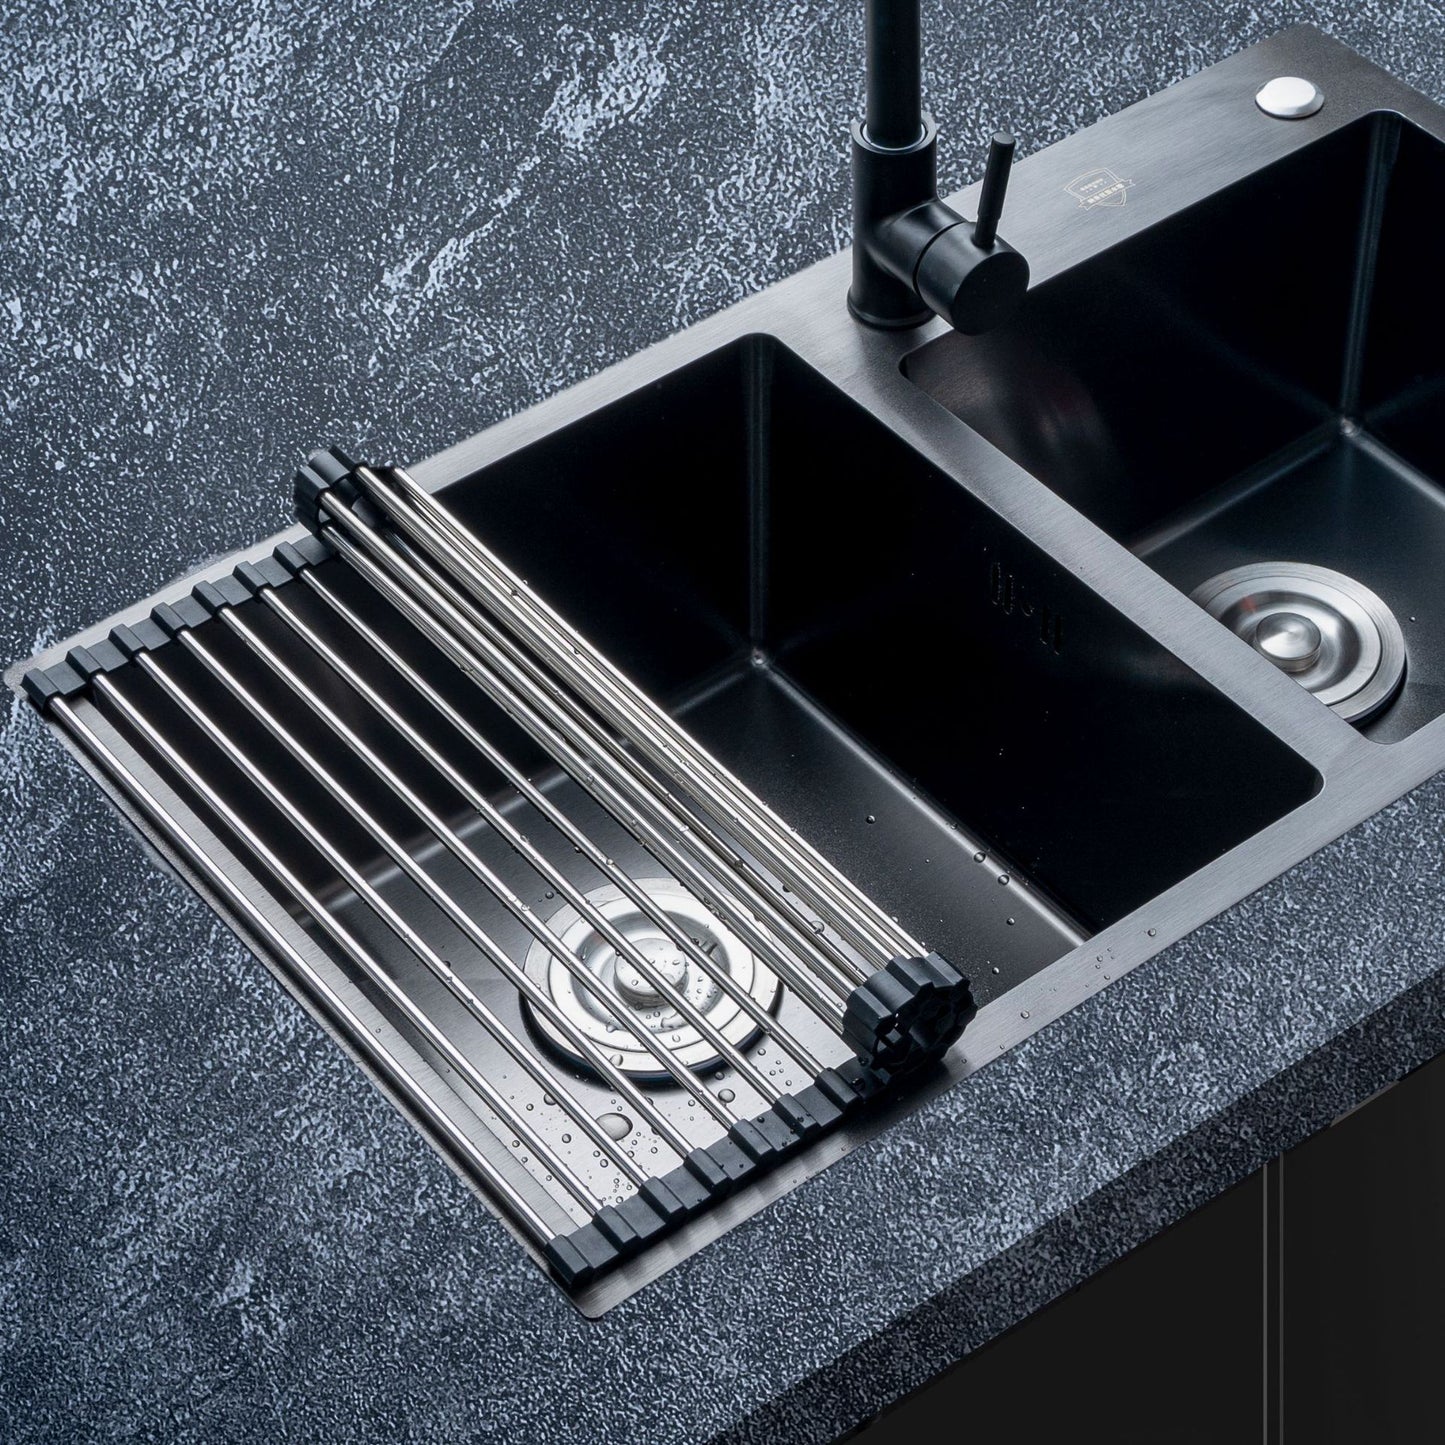 Égouttoir à vaisselle multifonctionnel - X10 Maroc - Livraison gratuite -